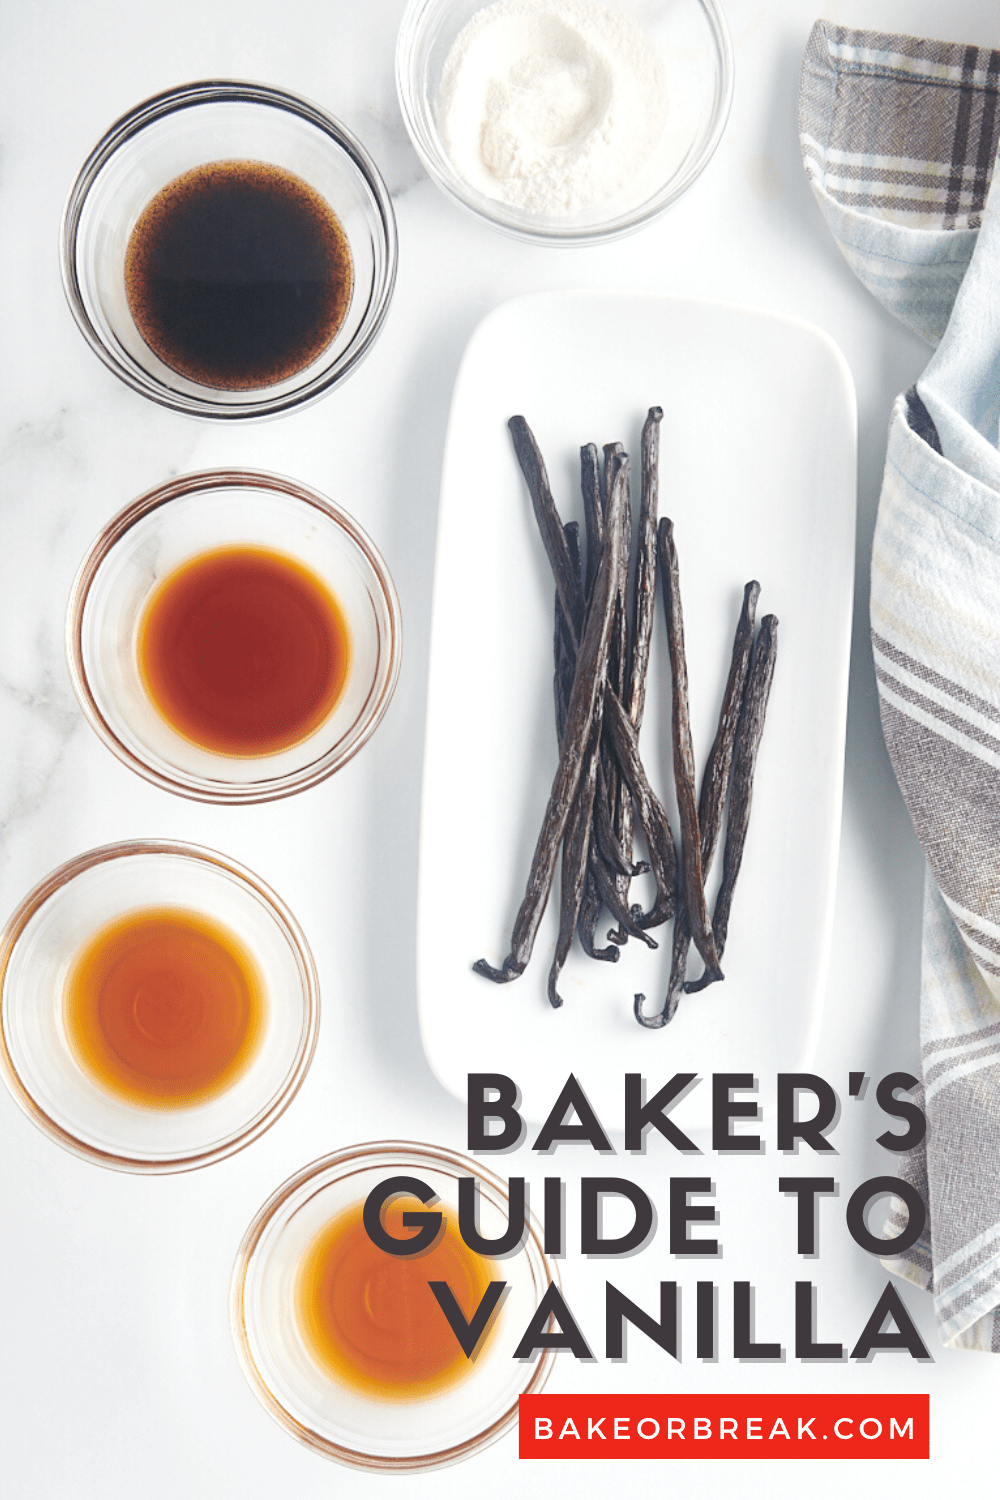 Panduan Baker untuk Vanilla bakeorbreak.com